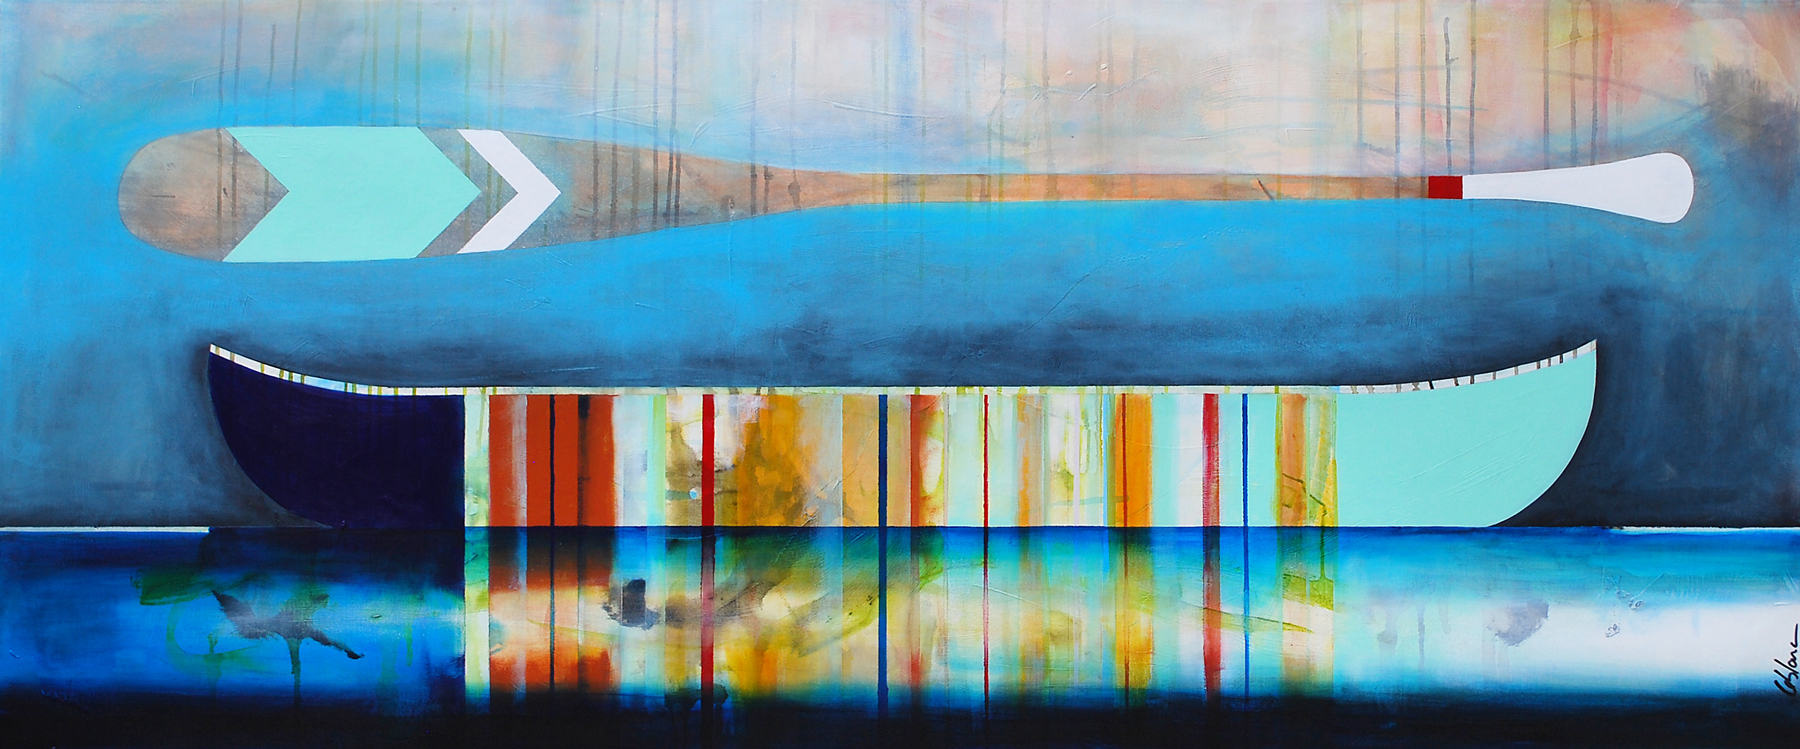 Un goût de poire, mixed media canoe painting by Sylvain Leblanc | Effusion Art Gallery + cast Glass Studio, Invermere BC